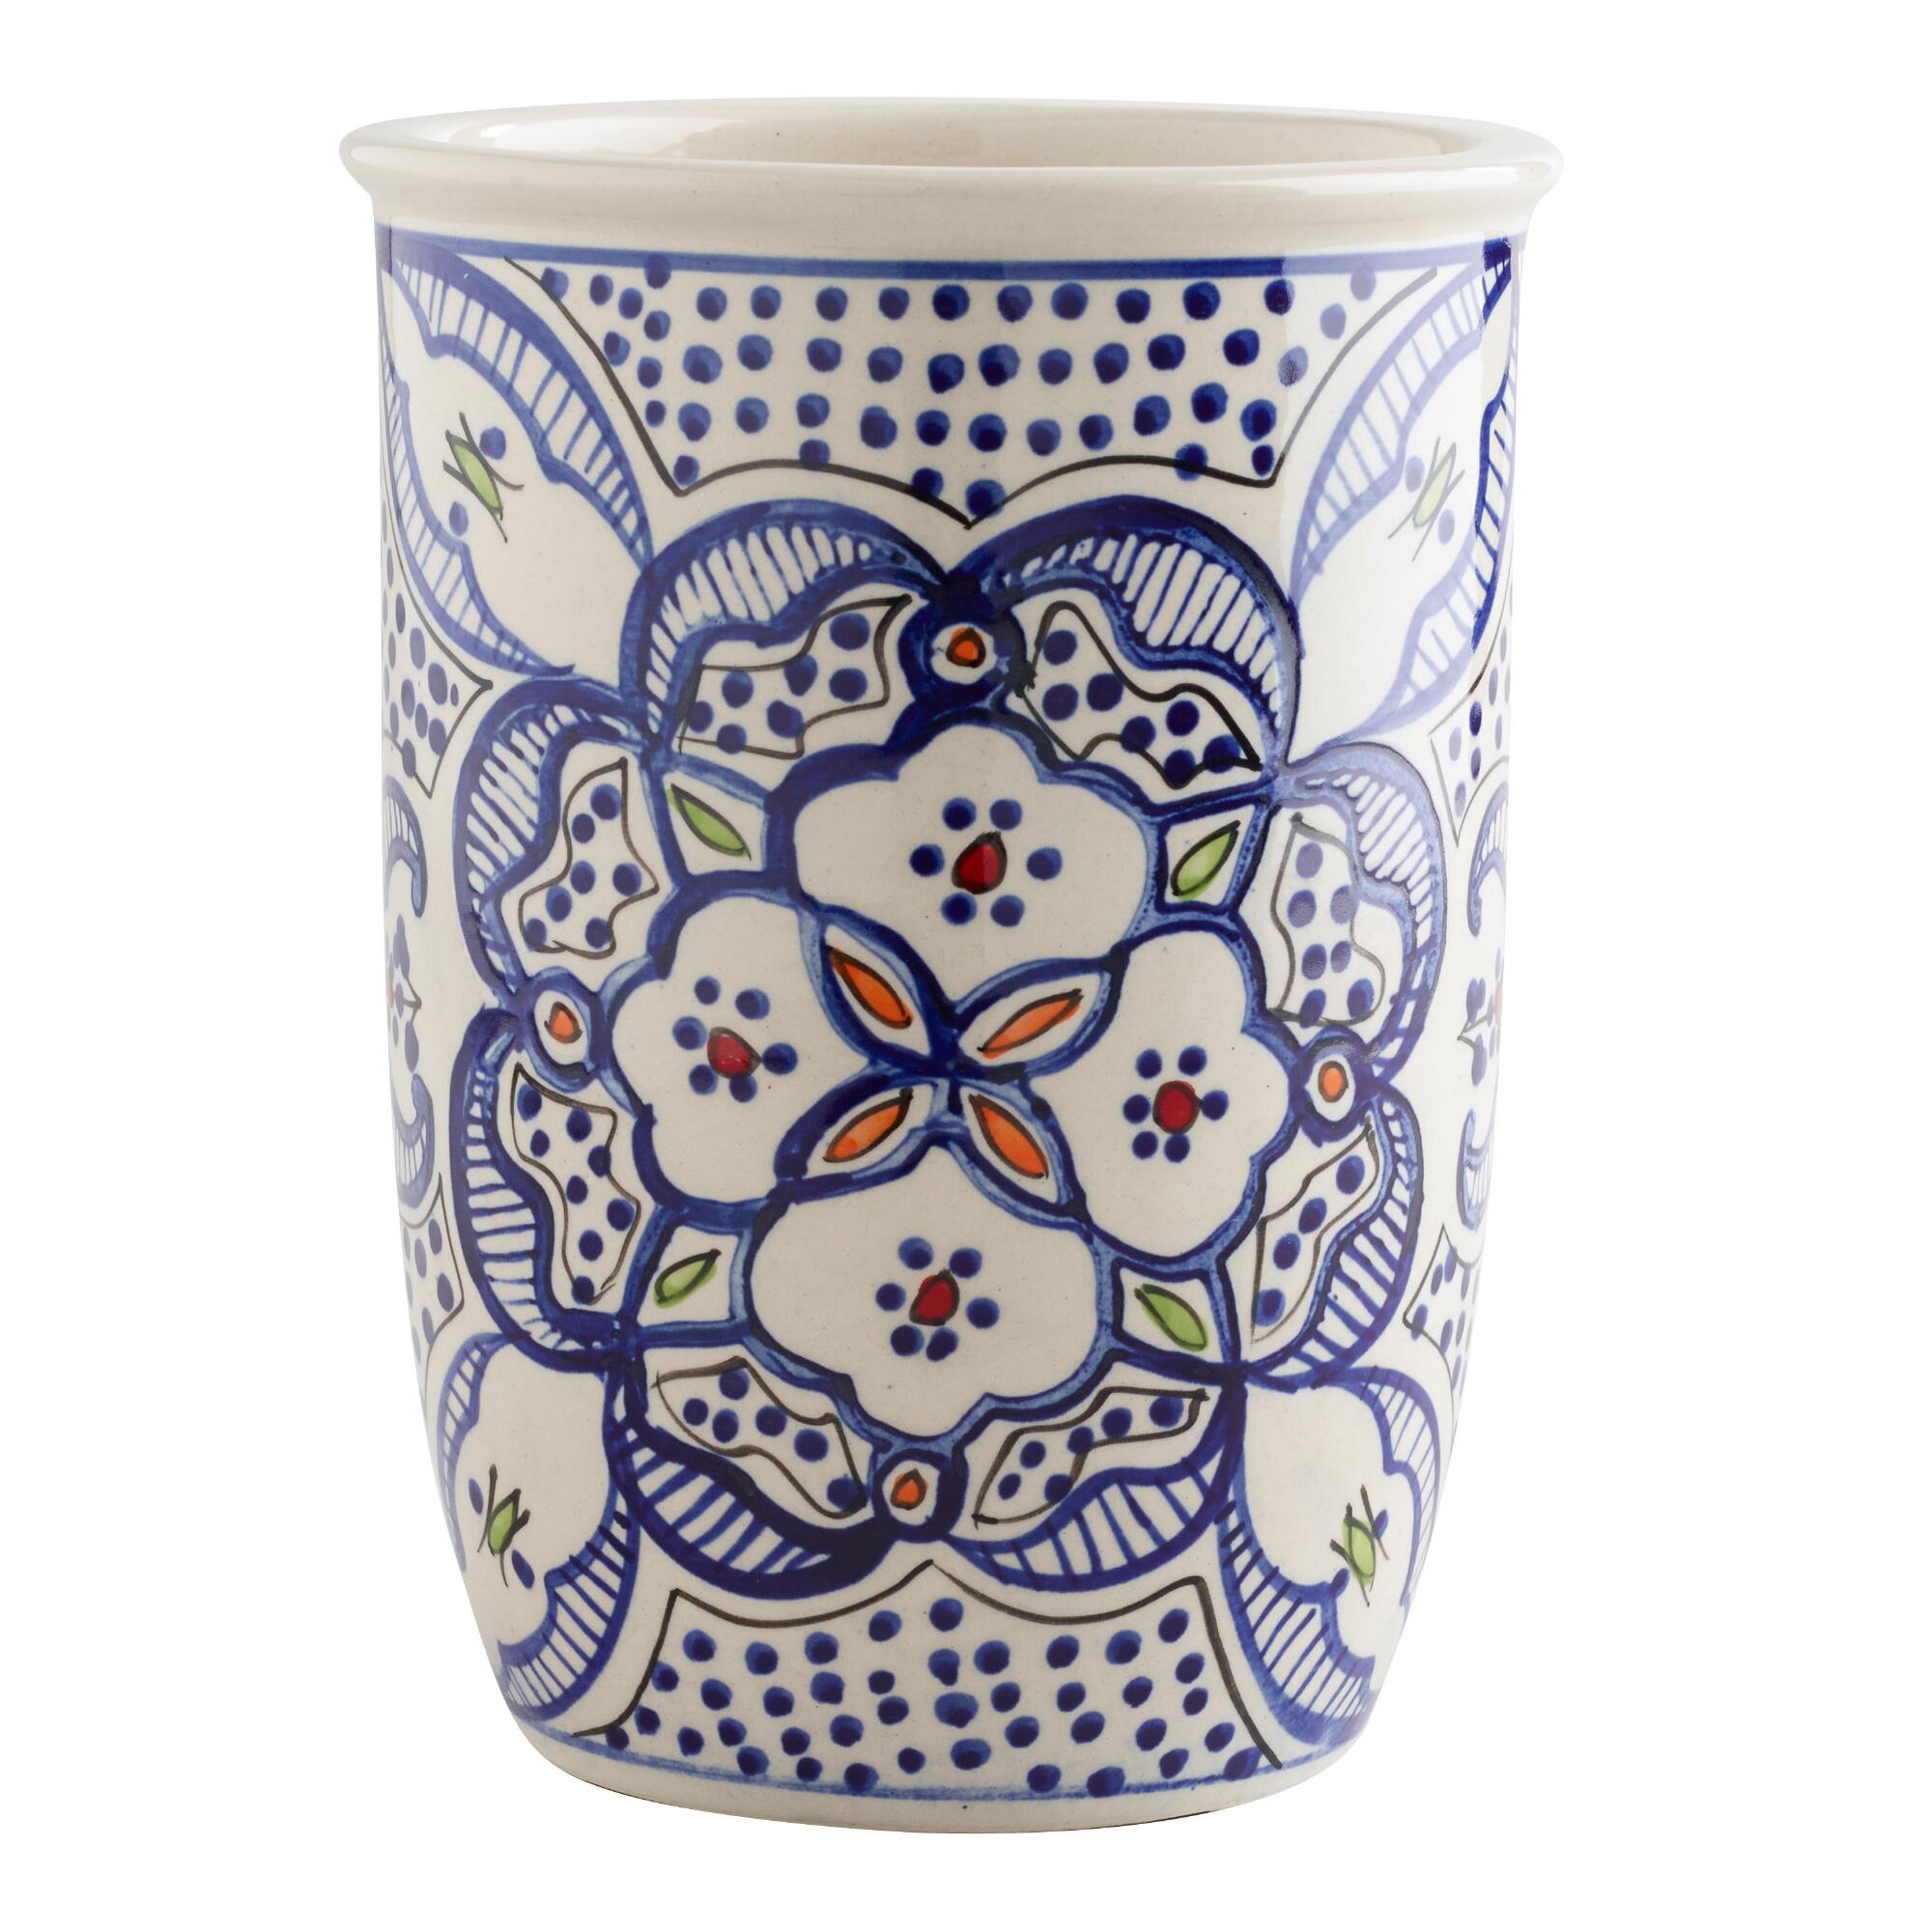 Handpainted Ceramic Tunis Utensil Holder: Blue by World Market